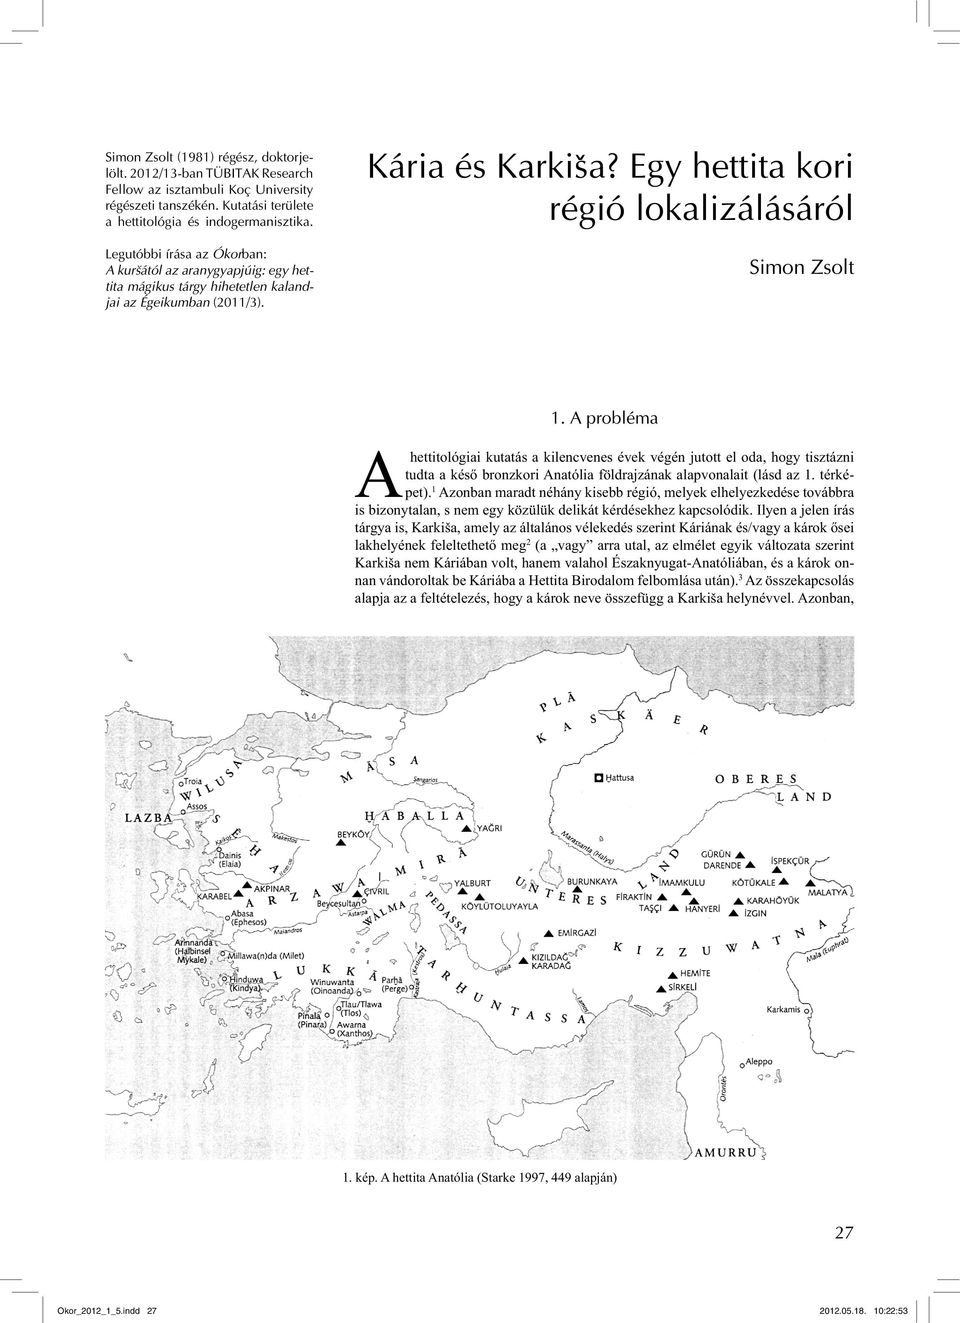 A probléma Ahettitológiai kutatás a kilencvenes évek végén jutott el oda, hogy tisztázni tudta a késő bronzkori Anatólia földrajzának alapvonalait (lásd az 1. térképet).